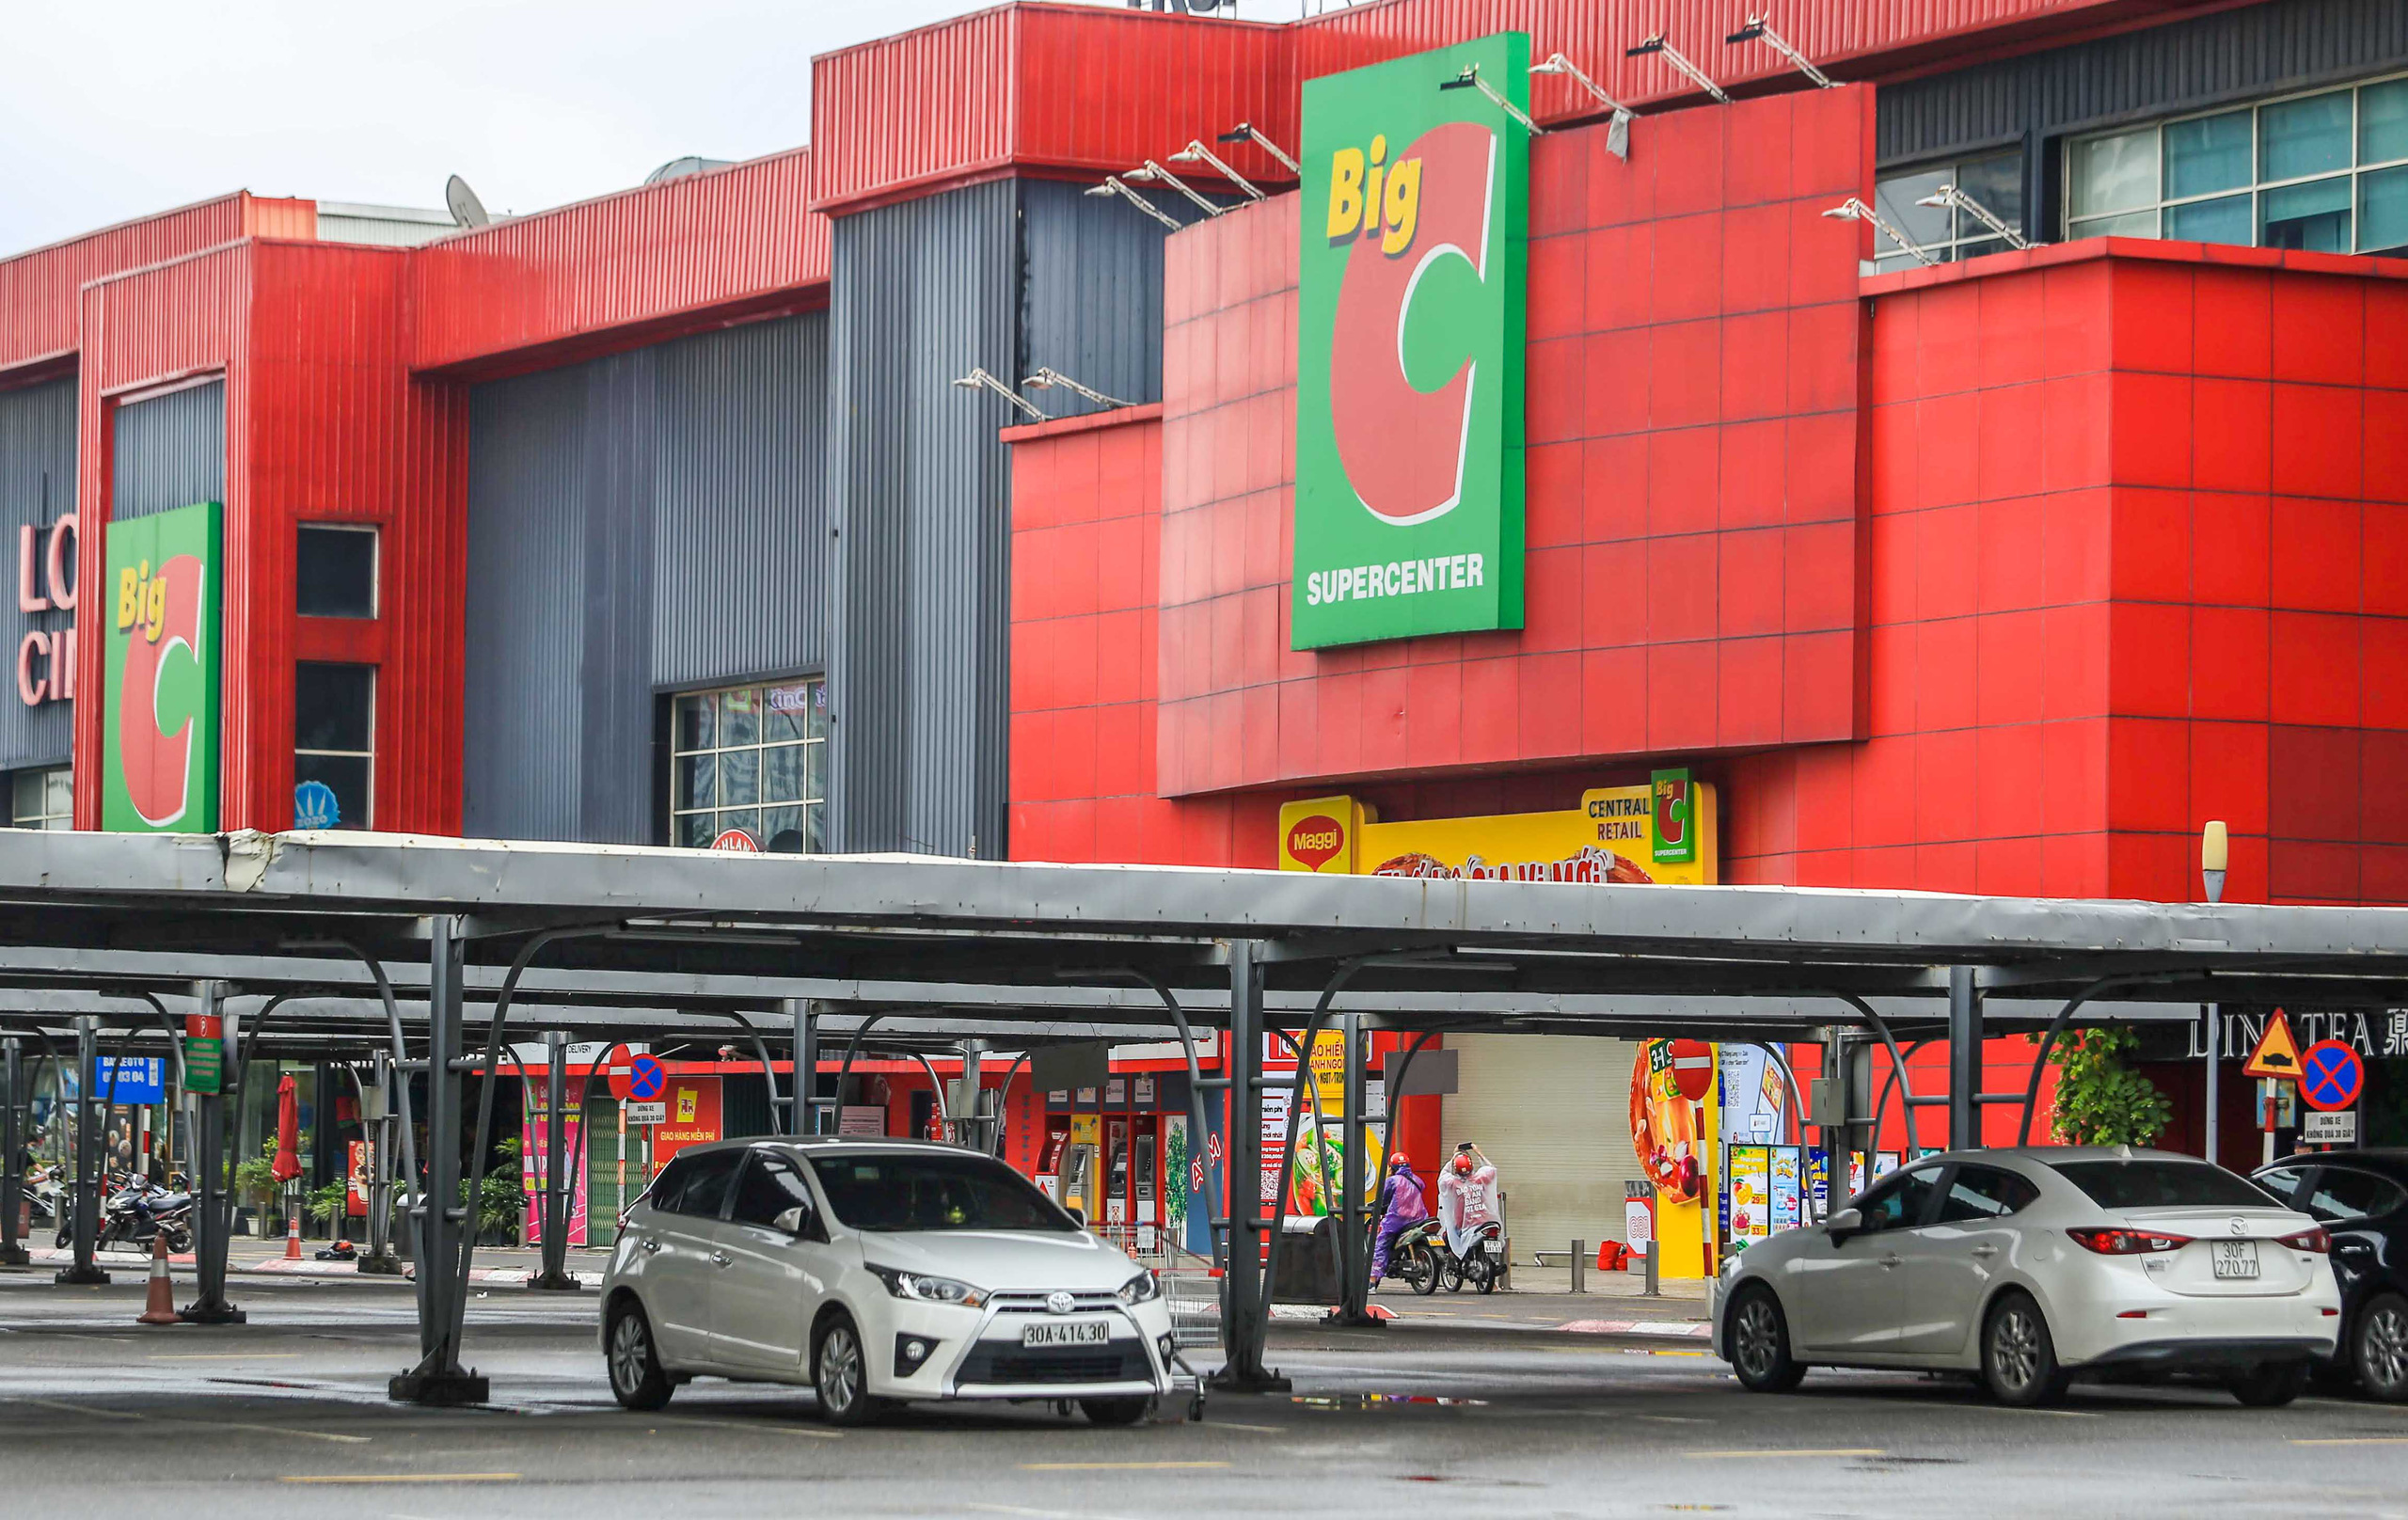 Big C Thăng Long: Big C Thăng Long là một trong những hệ thống siêu thị lớn nhất tại Việt Nam với nhiều sản phẩm khác nhau bao gồm cả ô tô. Hình ảnh liên quan sẽ giới thiệu cho bạn các dịch vụ và lựa chọn mà bạn có thể tìm thấy tại Big C Thăng Long.